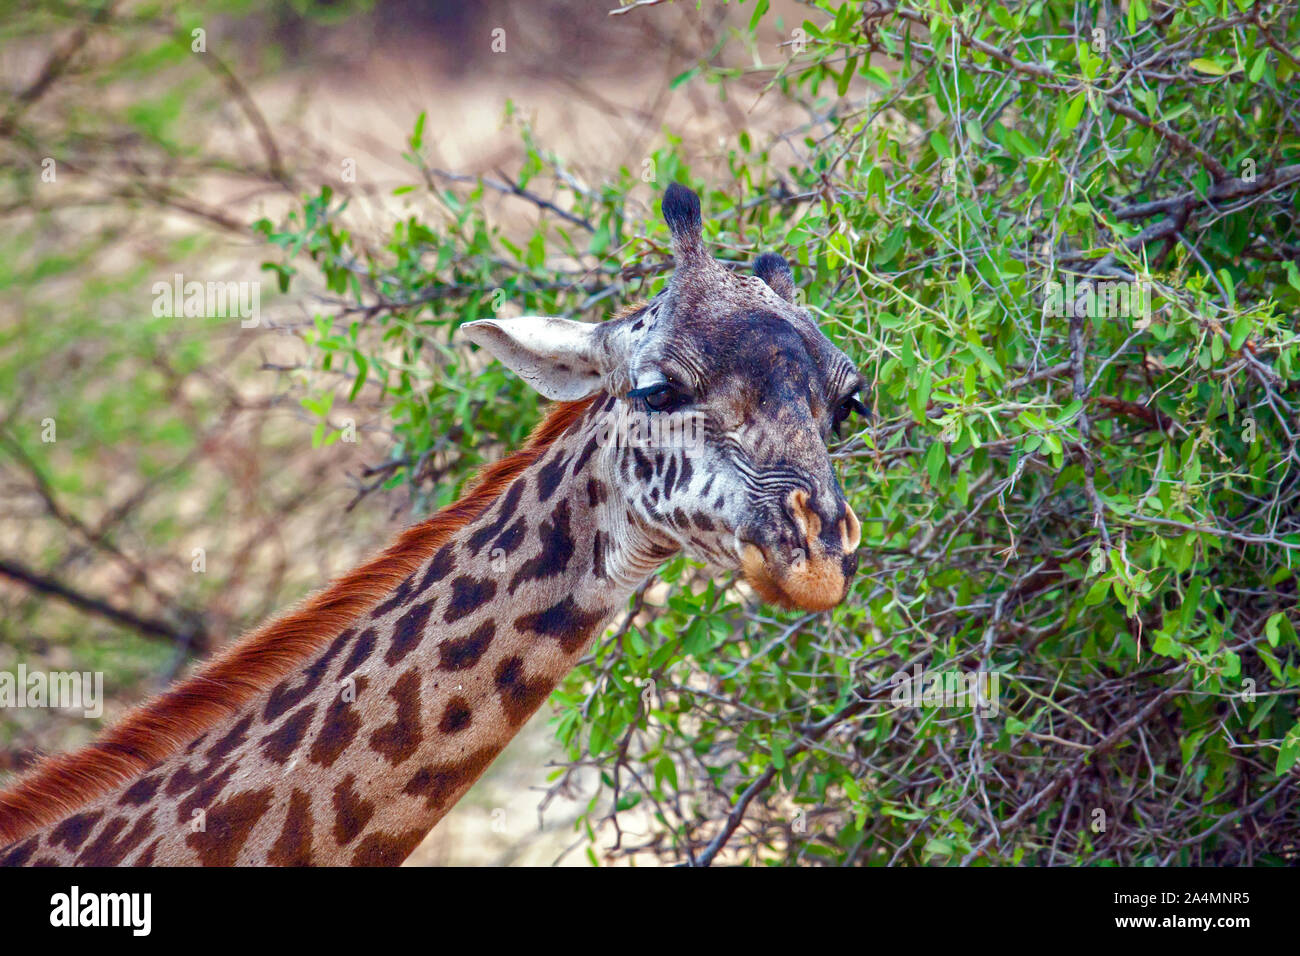 Giraffe; adulto; Giraffa camelopardalis, altos, la fauna de mamíferos, manchado de fur, herbívoro, piernas largas y cuello largo, retrato, Foto de stock